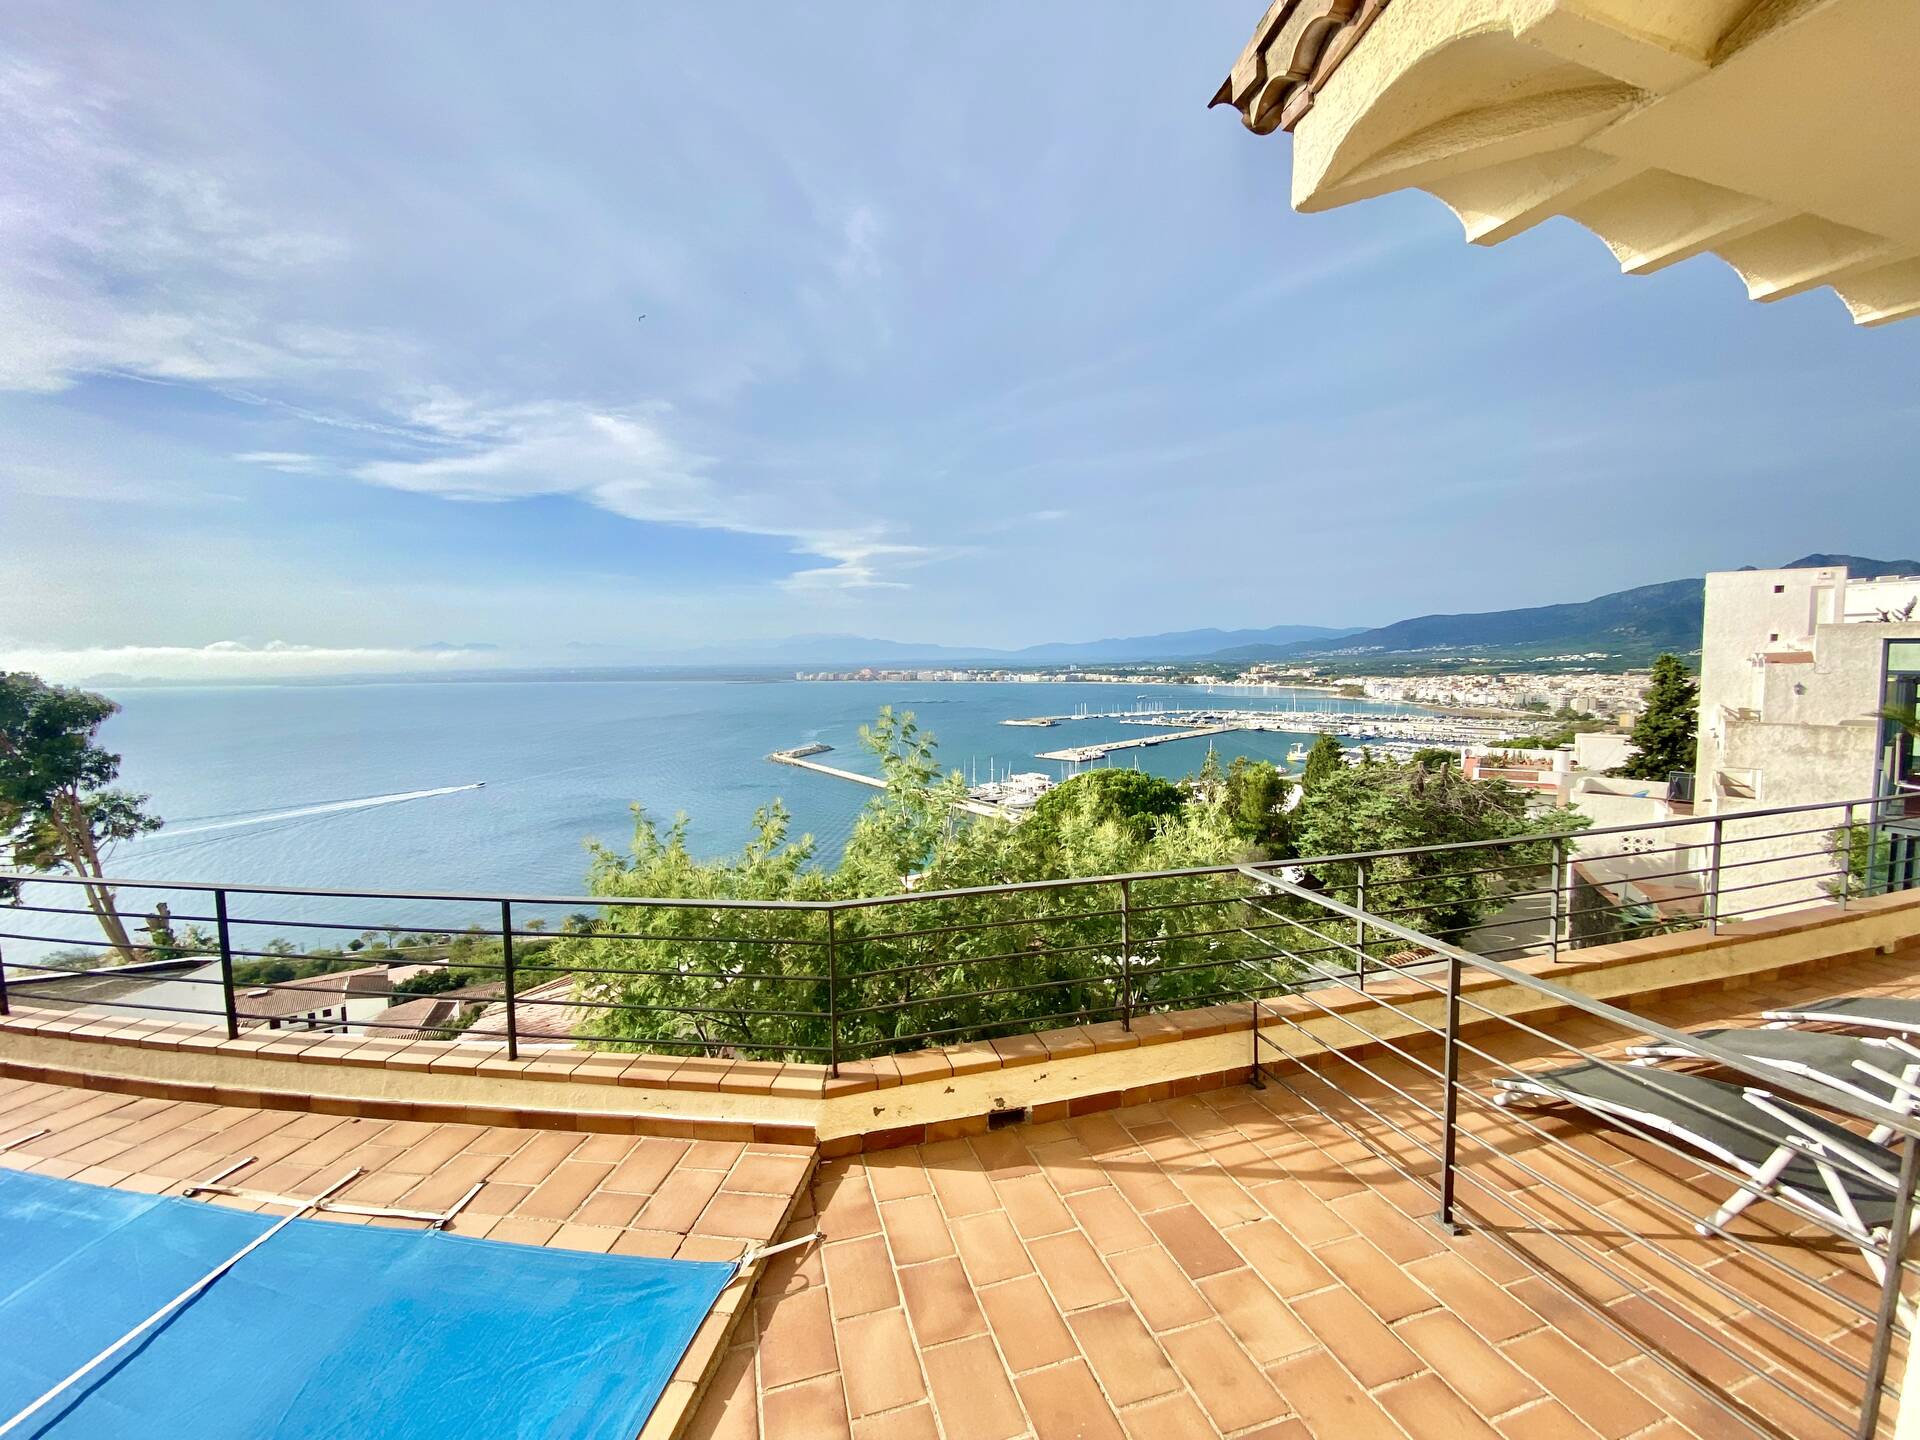 ¡Increíble vista al mar! Espectacular villa con licencia turística en venta en Rosas. ¡Una oportunid